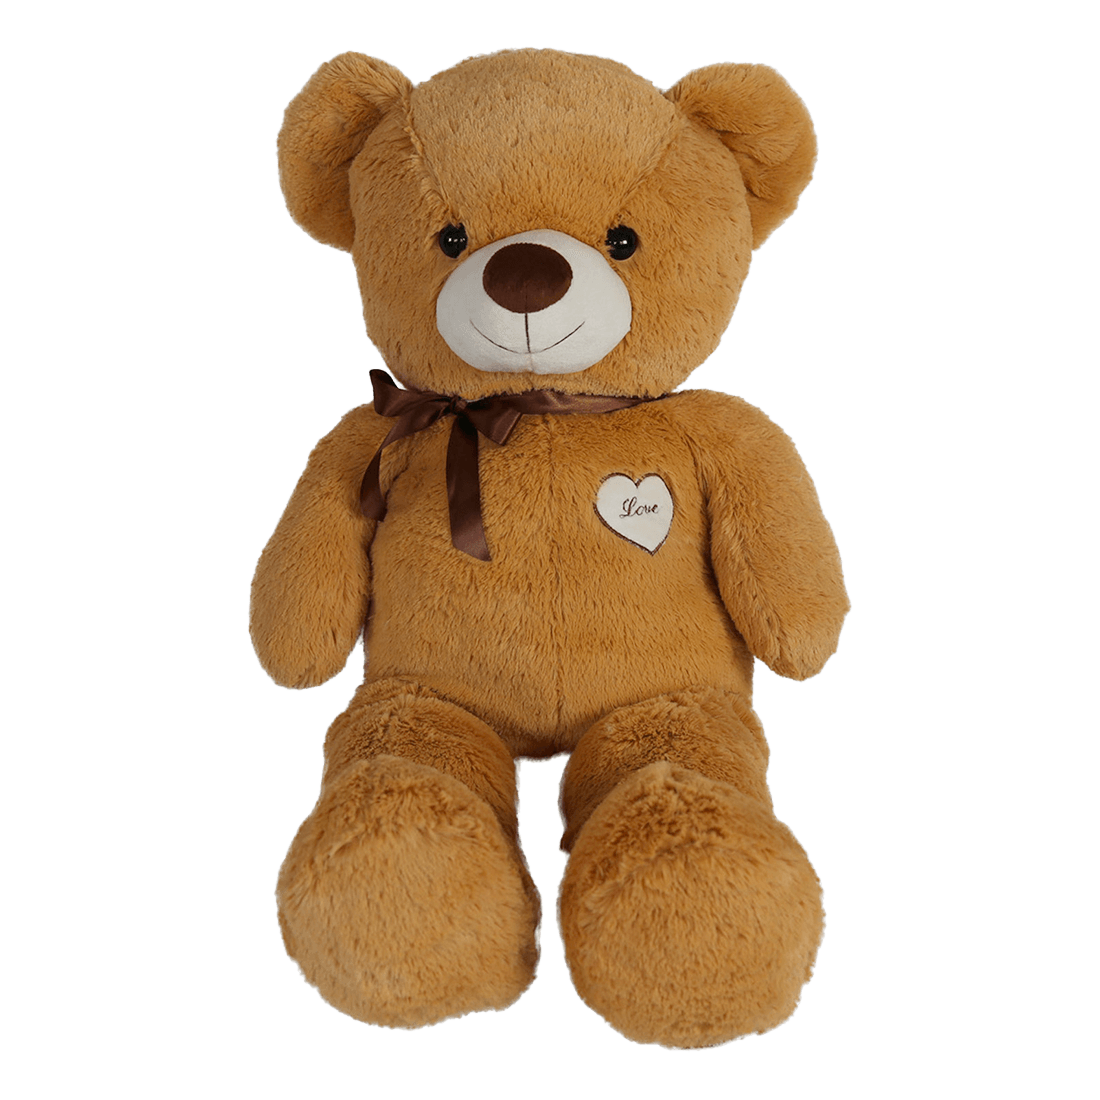 Peluche oso teddy color arena 30 cm - Librería Papelería Goyo